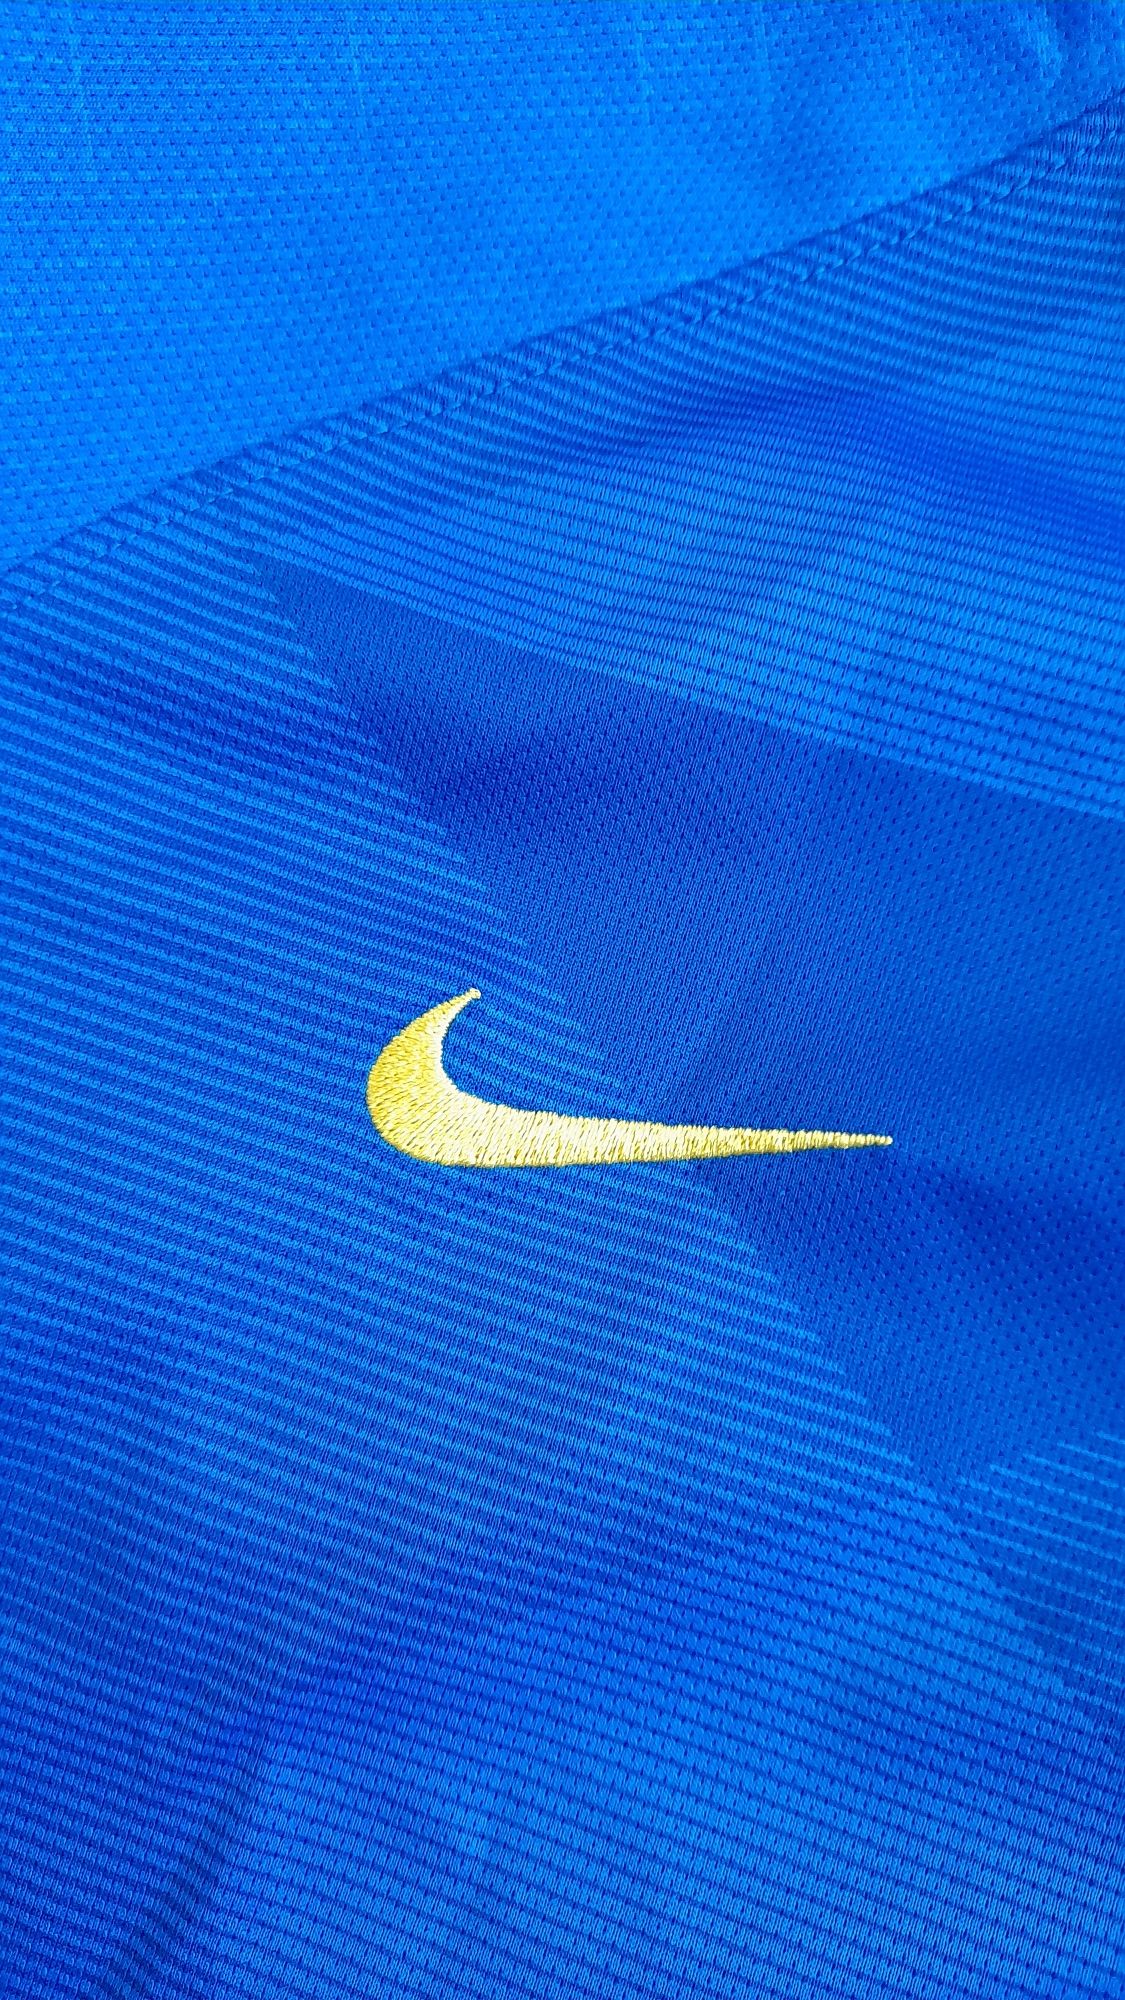 Koszulka meczowa reprezentacji Brazylii 2018 Nike